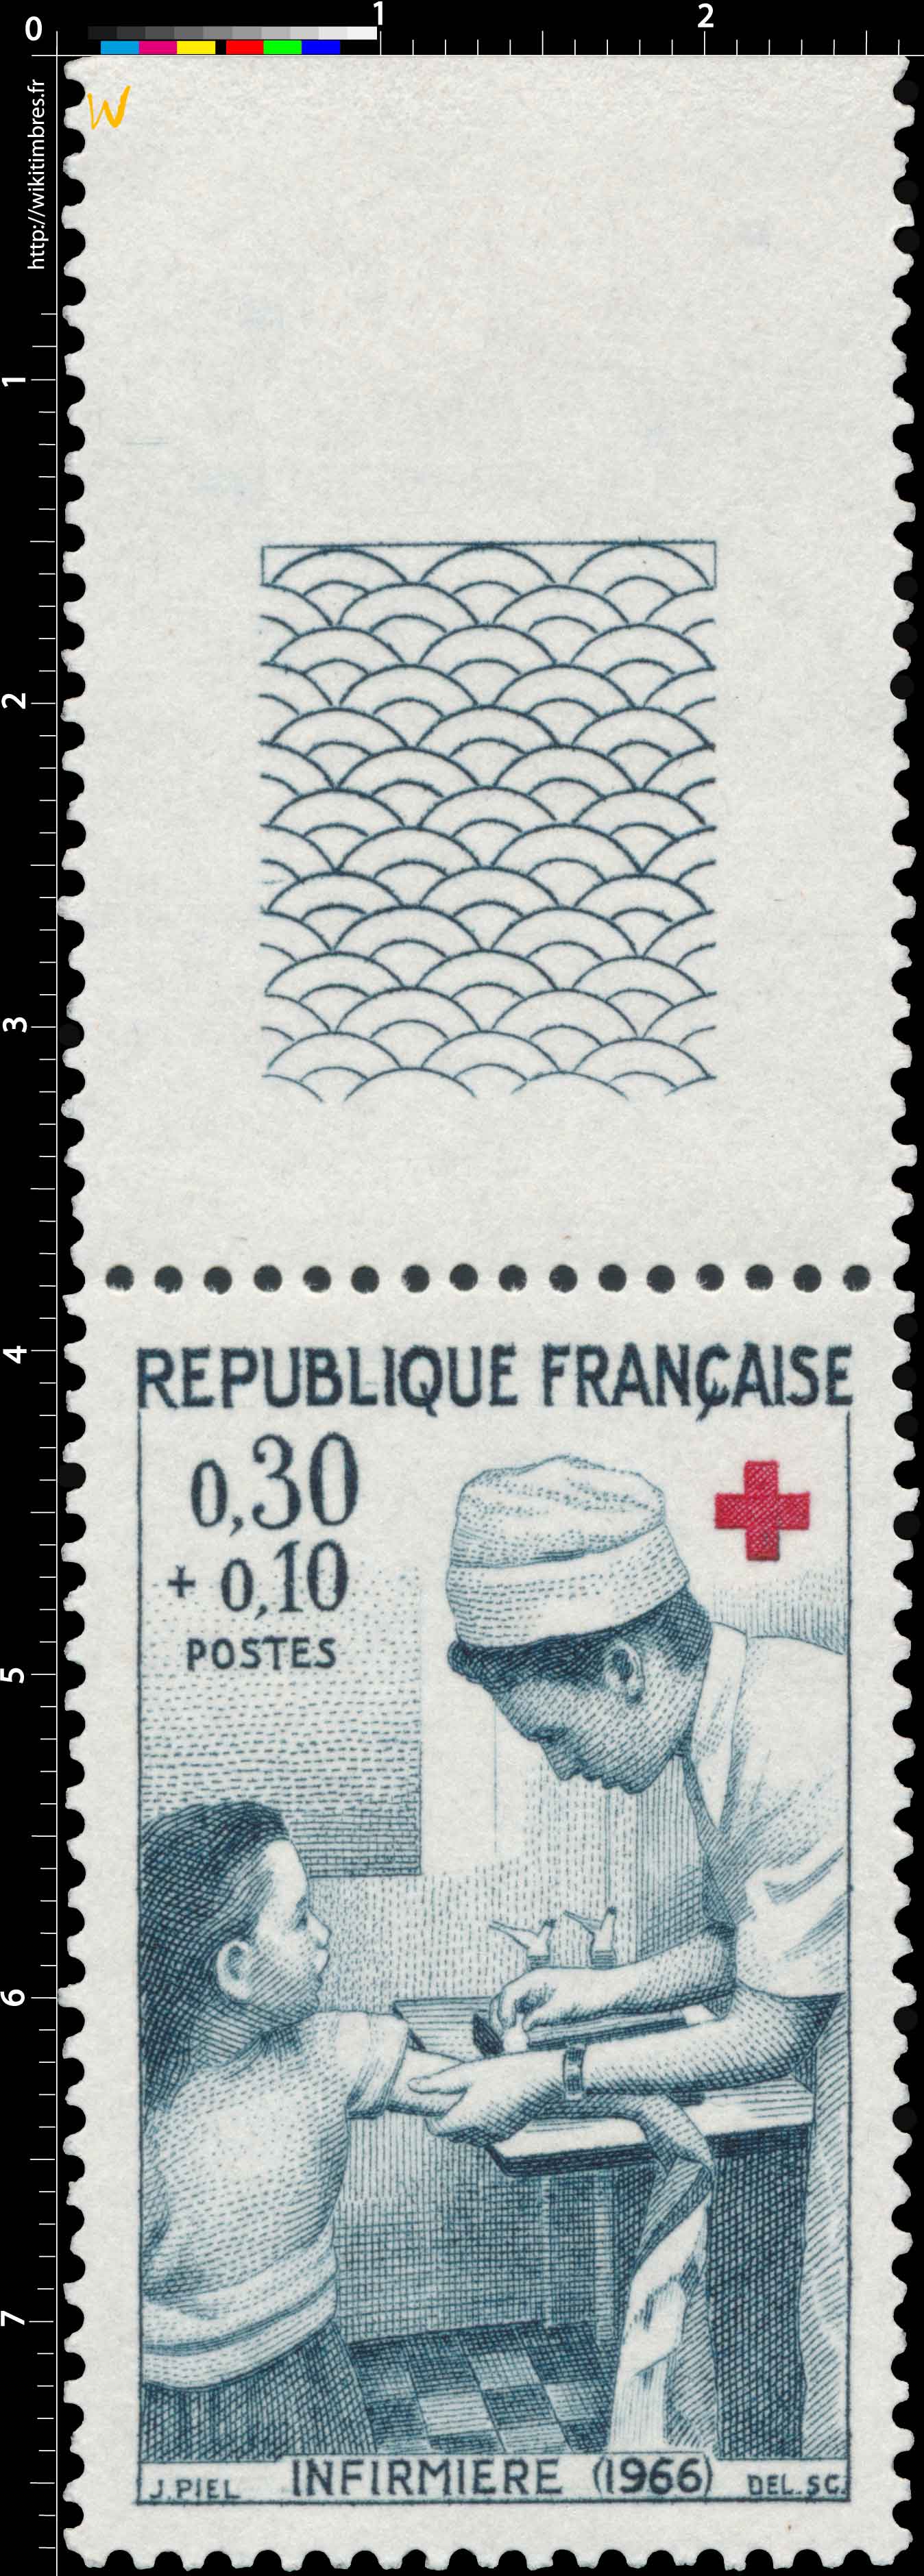 INFIRMIÈRE (1966)